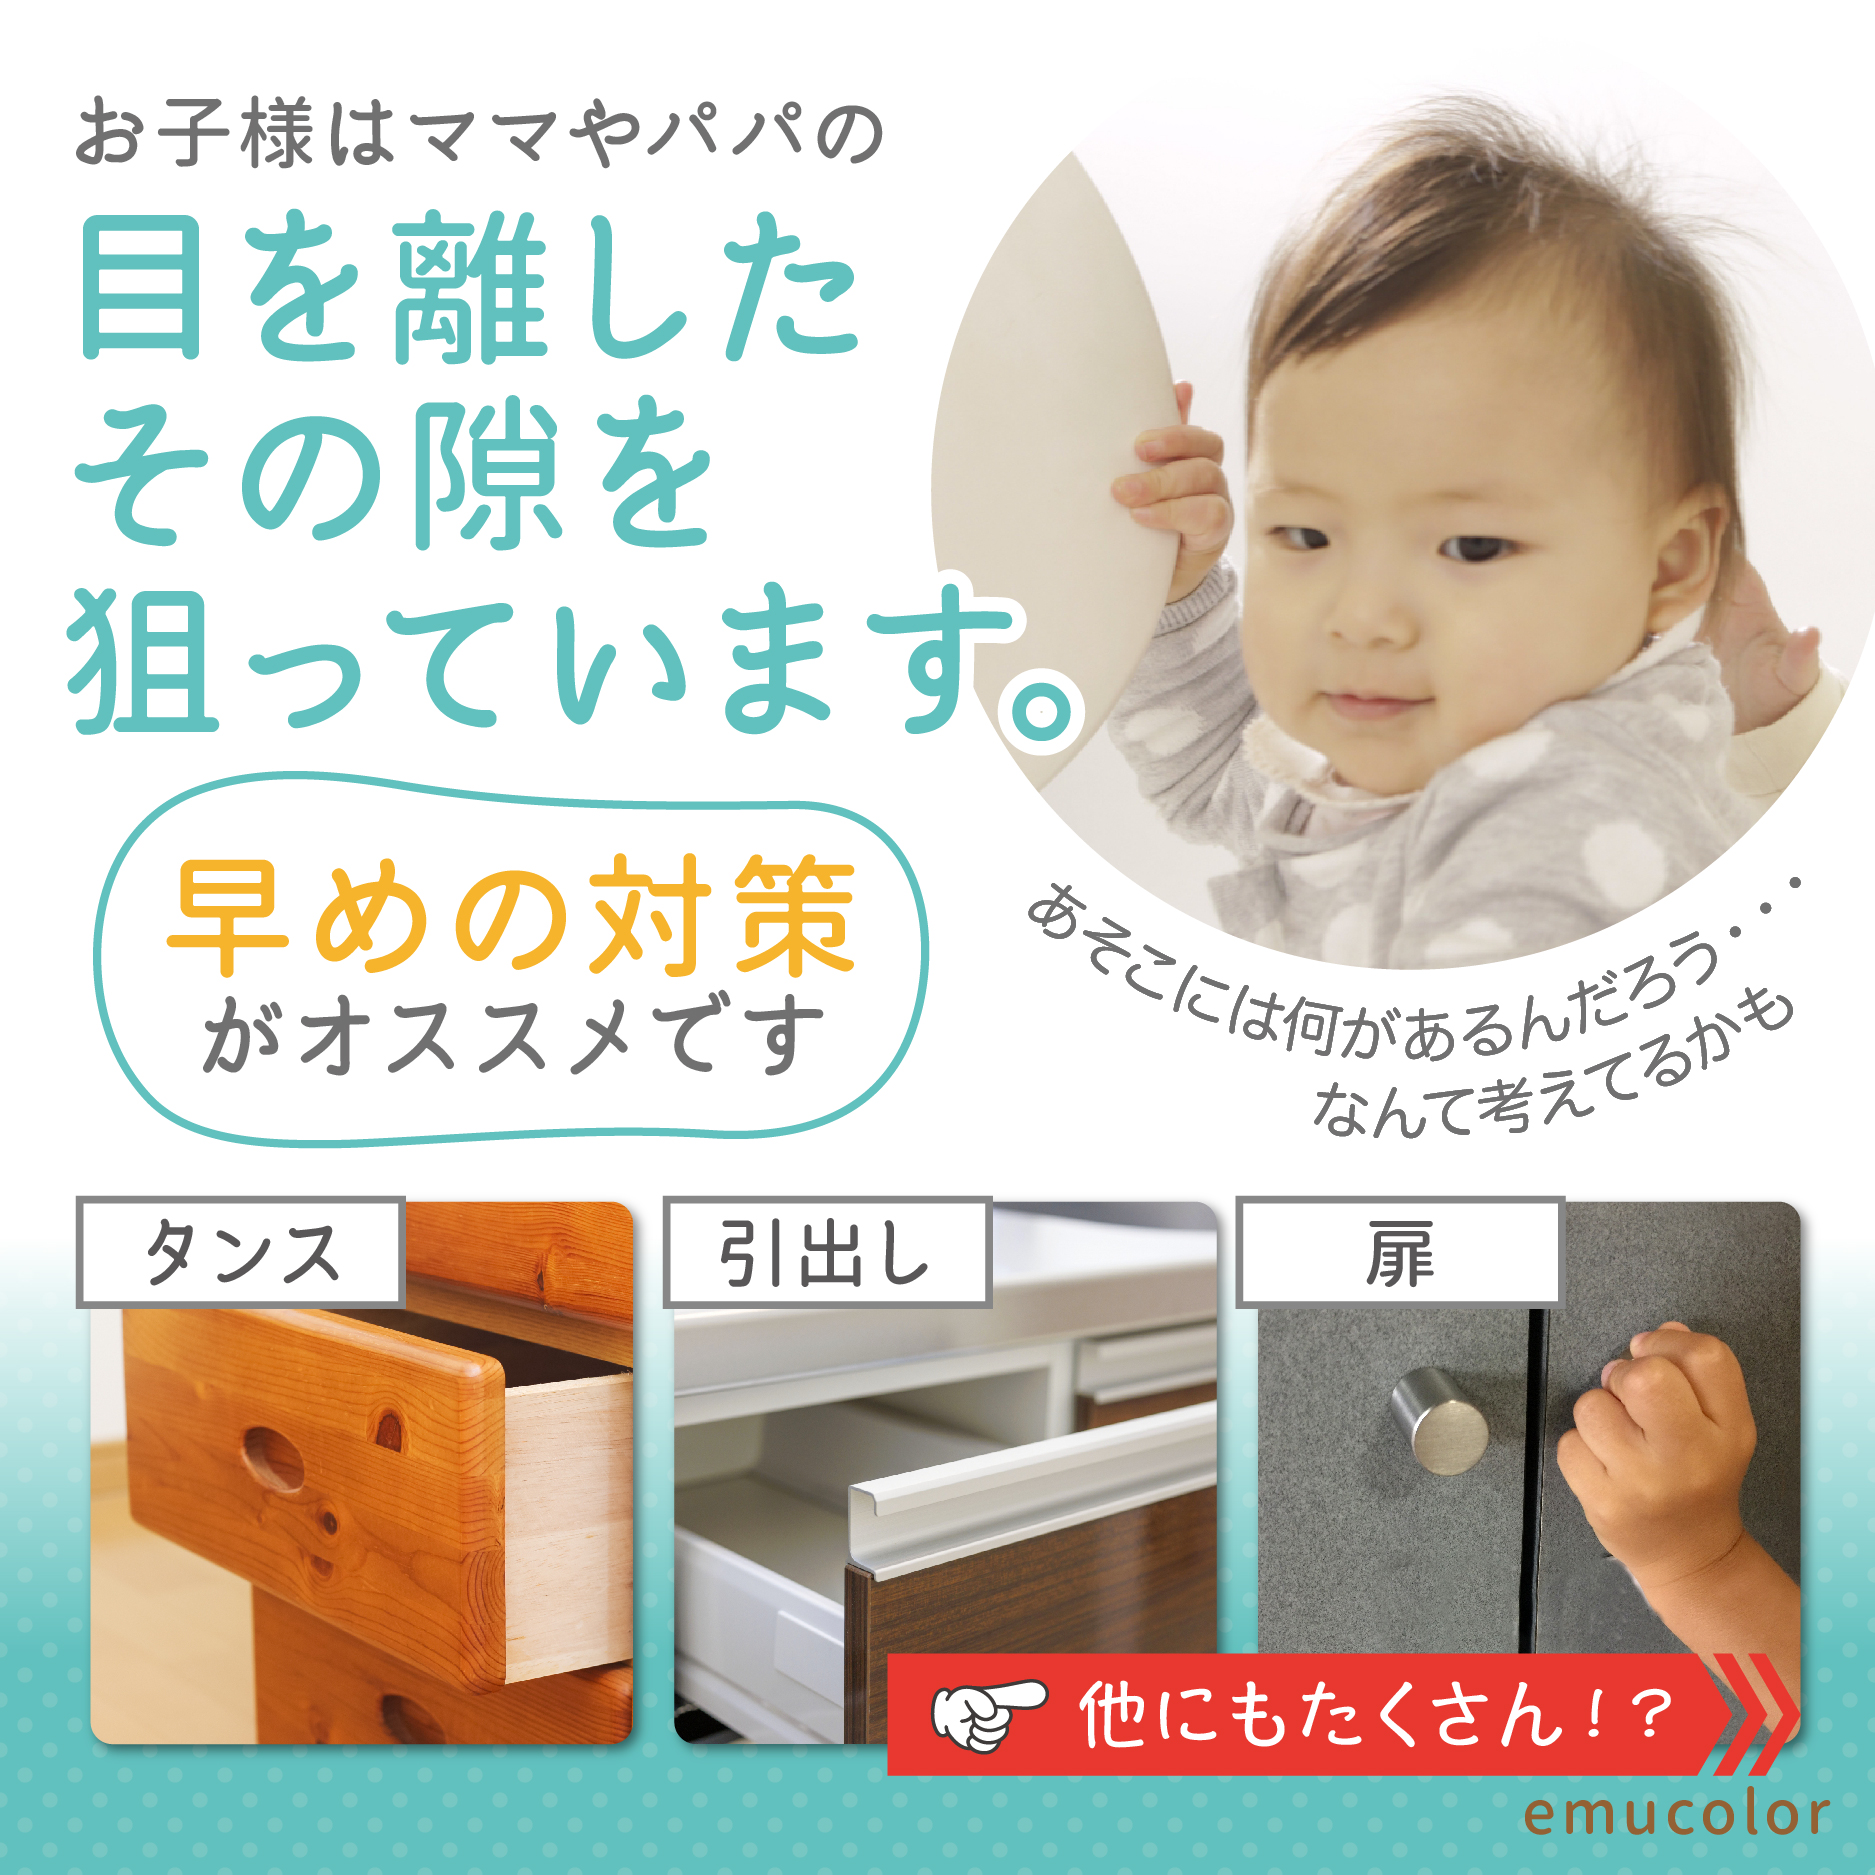  детский блокировка baby защита выдвижной ящик мебель дверь дверной стопор dial тип младенец ребенок баловство предотвращение ключ 